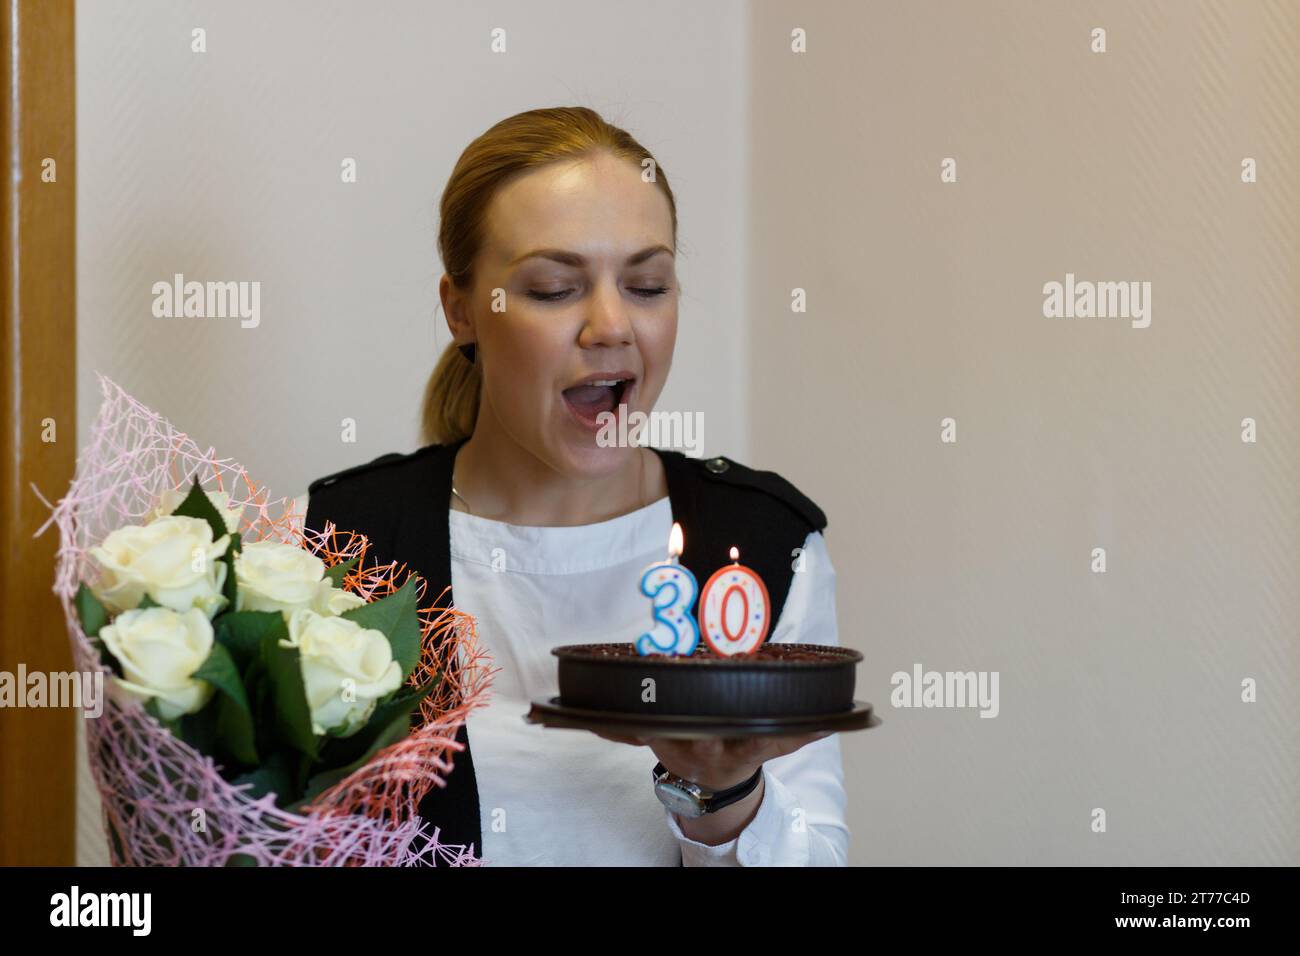 Eine junge glückliche Frau mit einem Blumenstrauß in den Händen bläst die Kerzen auf dem Kuchen aus, feiert ihren 30. Geburtstag. Stockfoto